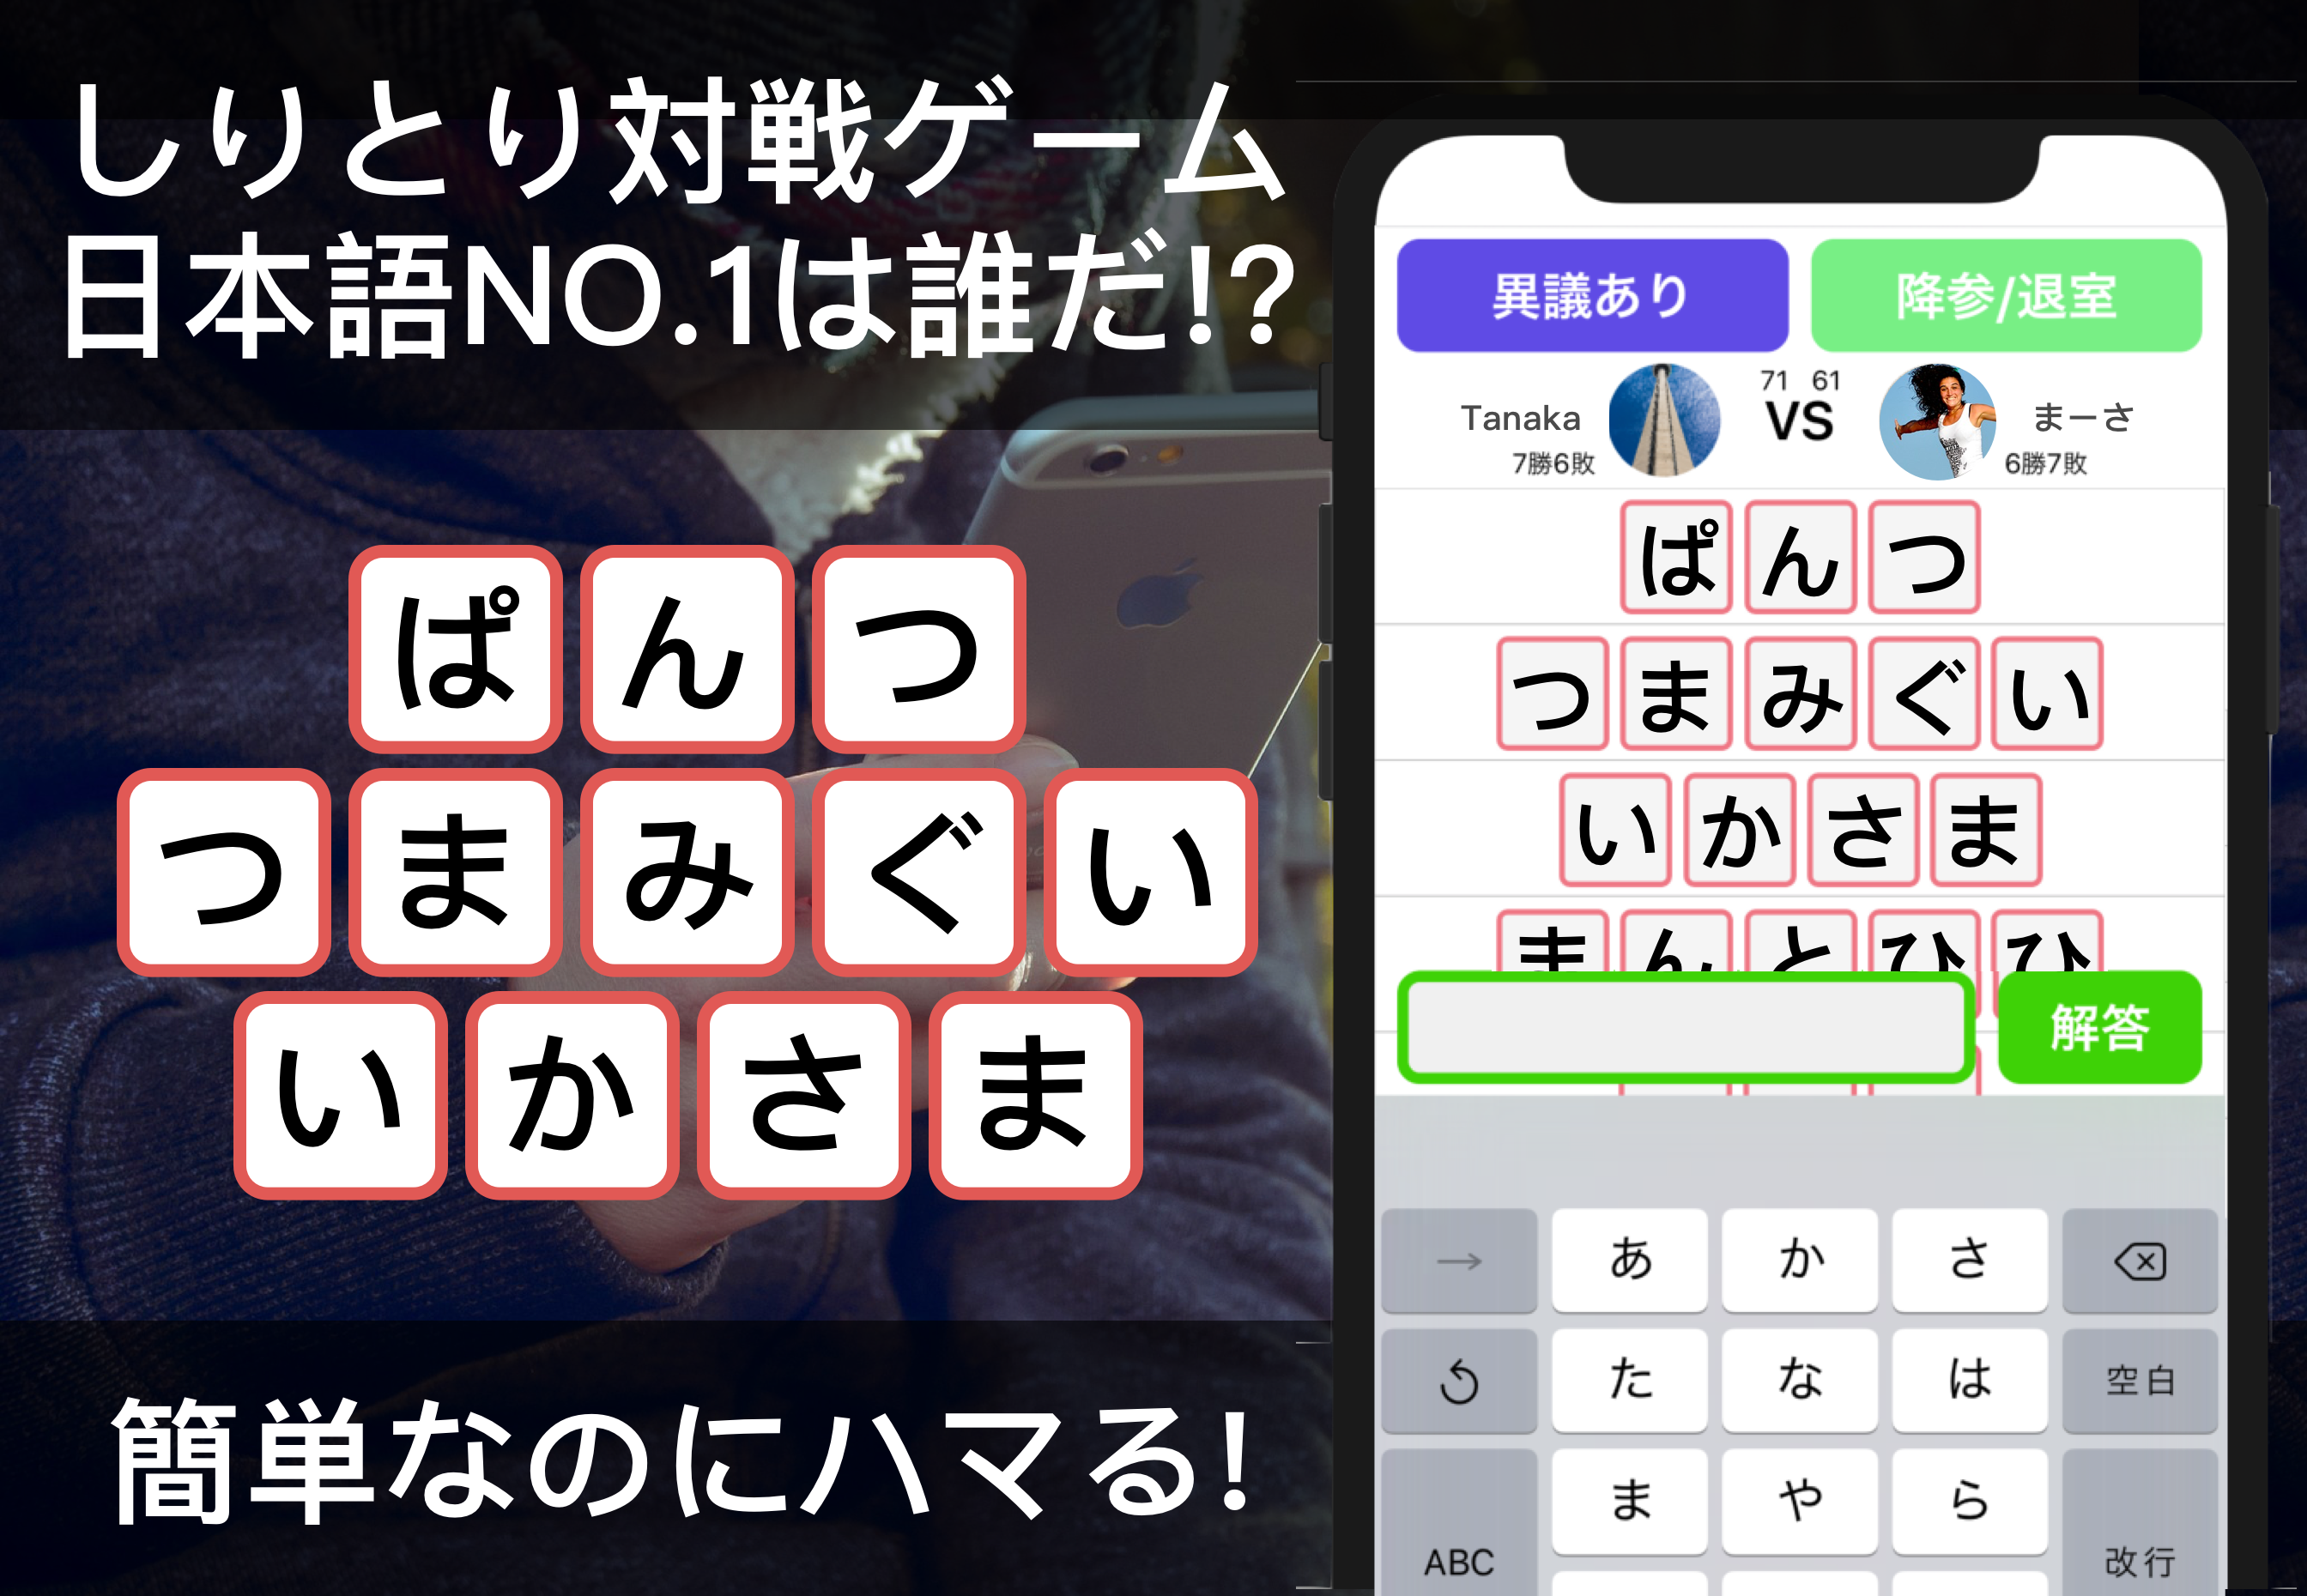 日本の国民医療費を低減せよ ボケ防止をゲームで実現 しりとり がオンライン対戦ゲームとなってapp Storeに新登場 しりとりオンライン リリースのお知らせ Lisfee株式会社のプレスリリース